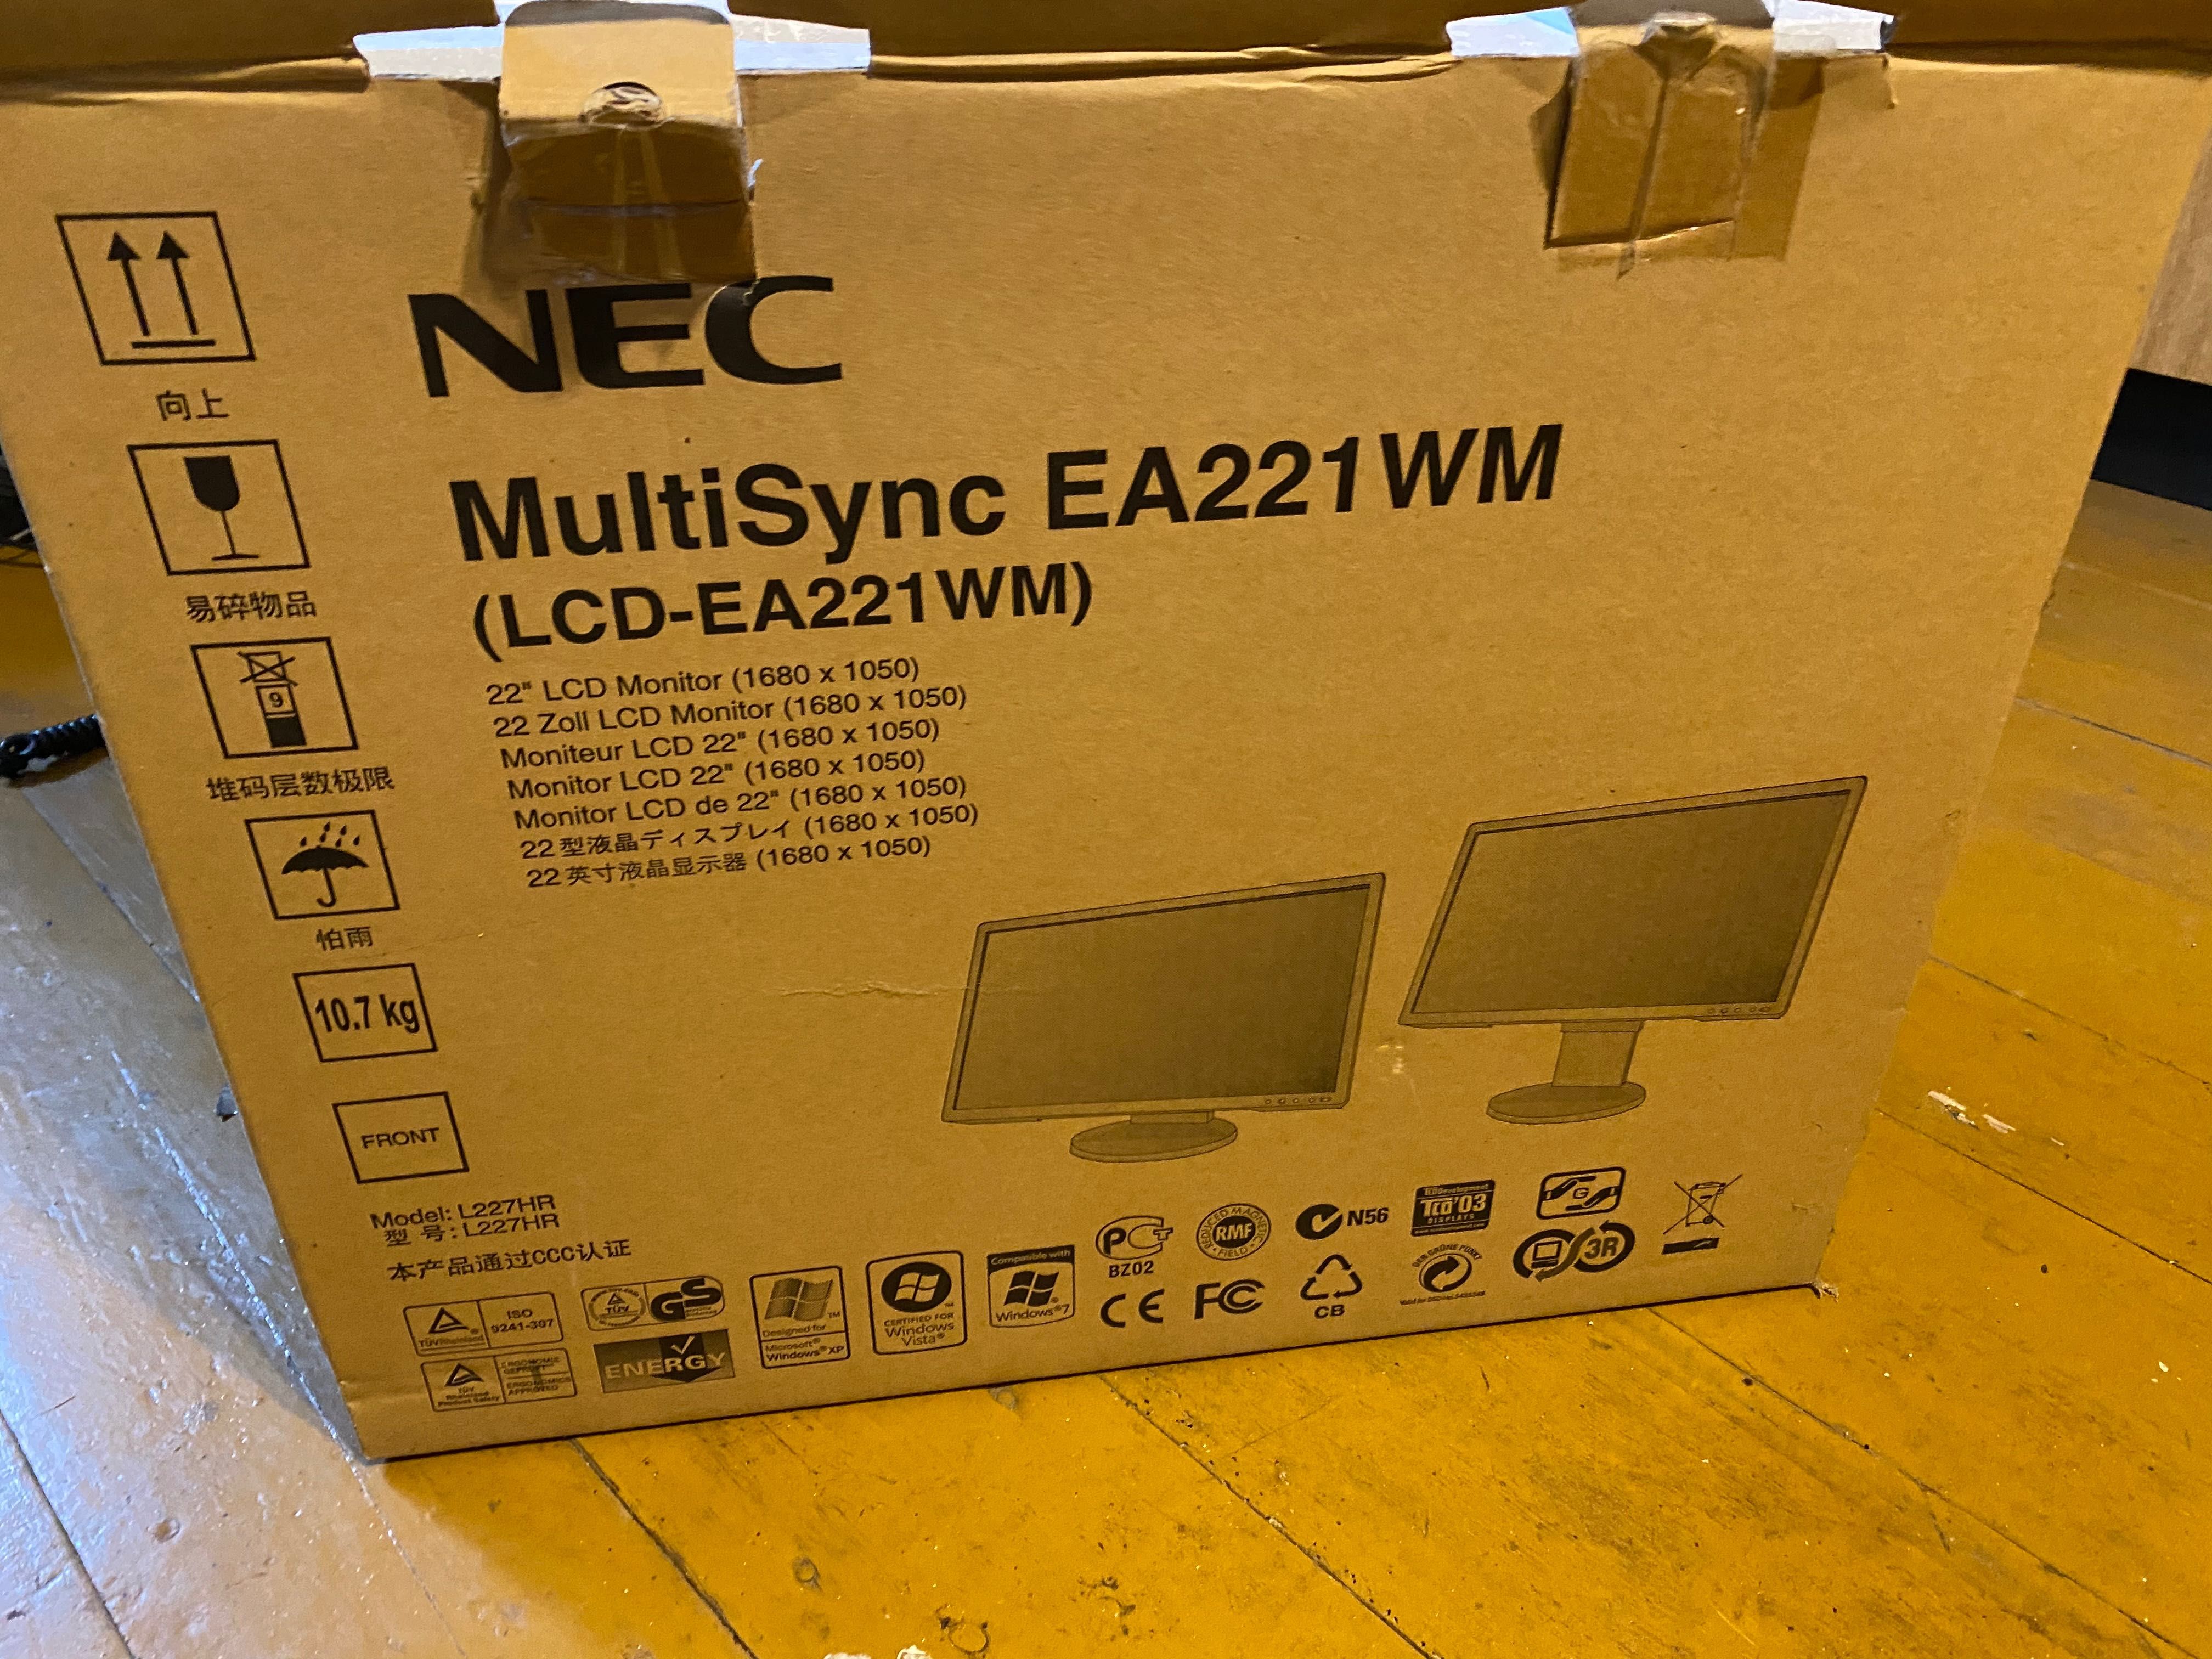 Monitor NEC EA221 WM